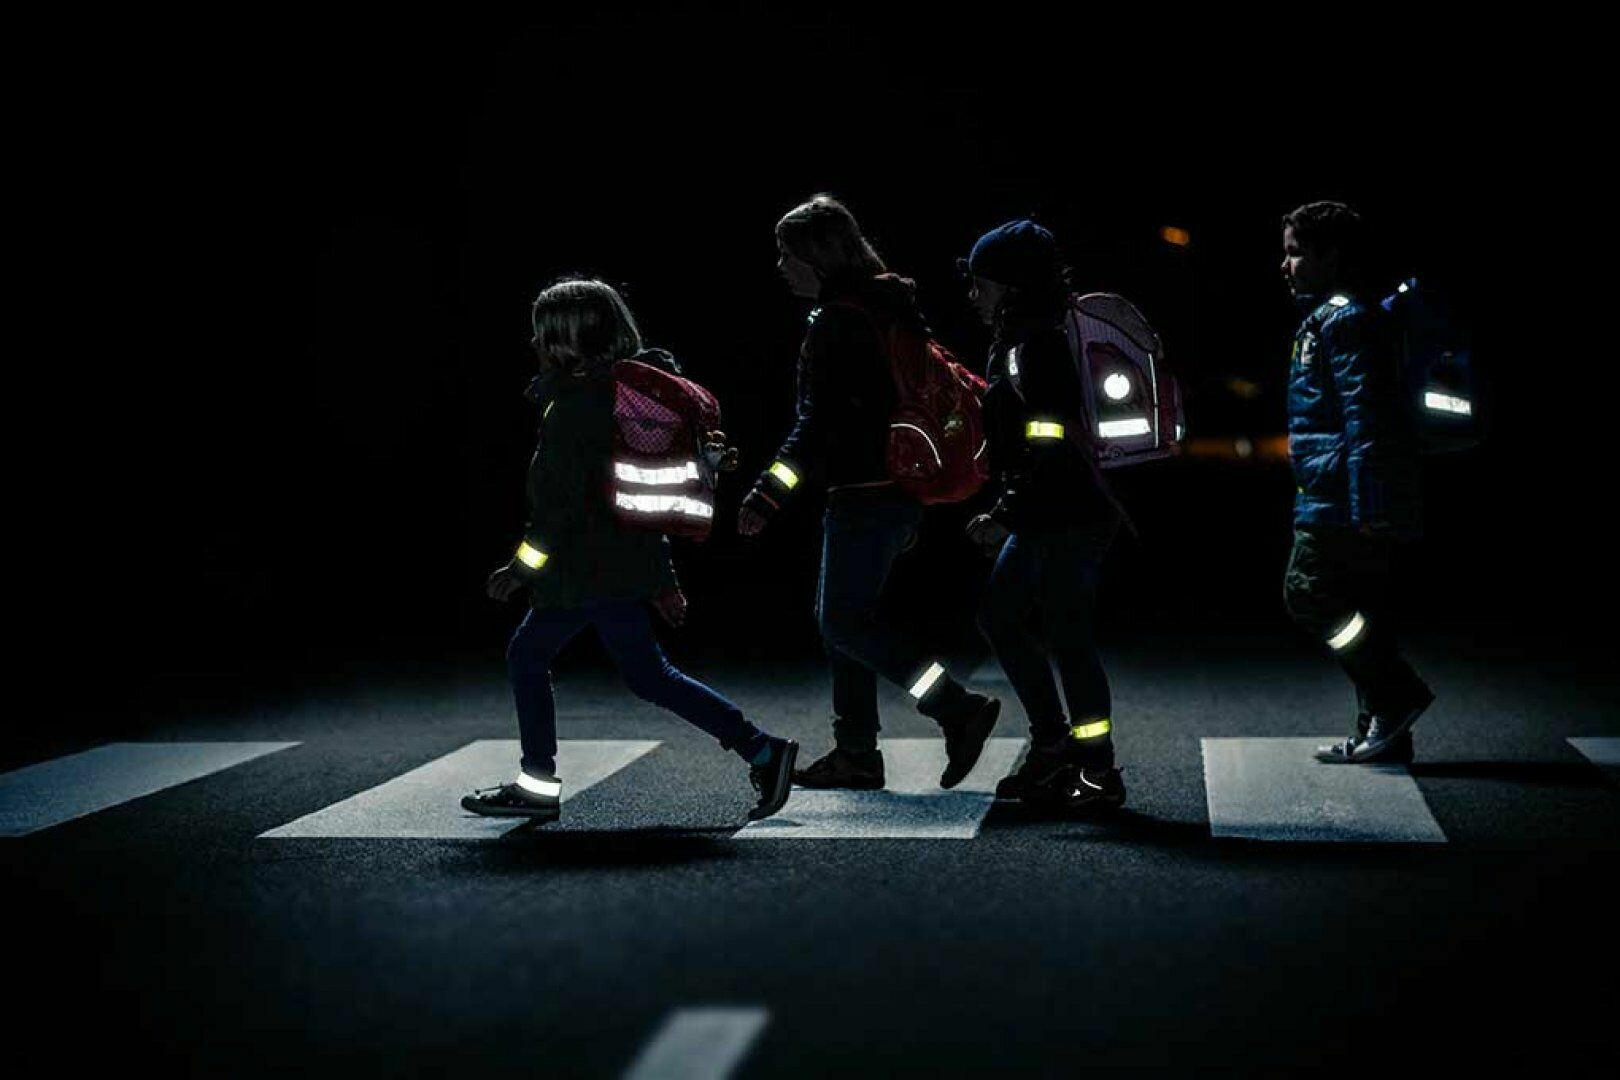 Светящиеся пешеходы в темноте: как добиться «нулевой смертности» на дорогах